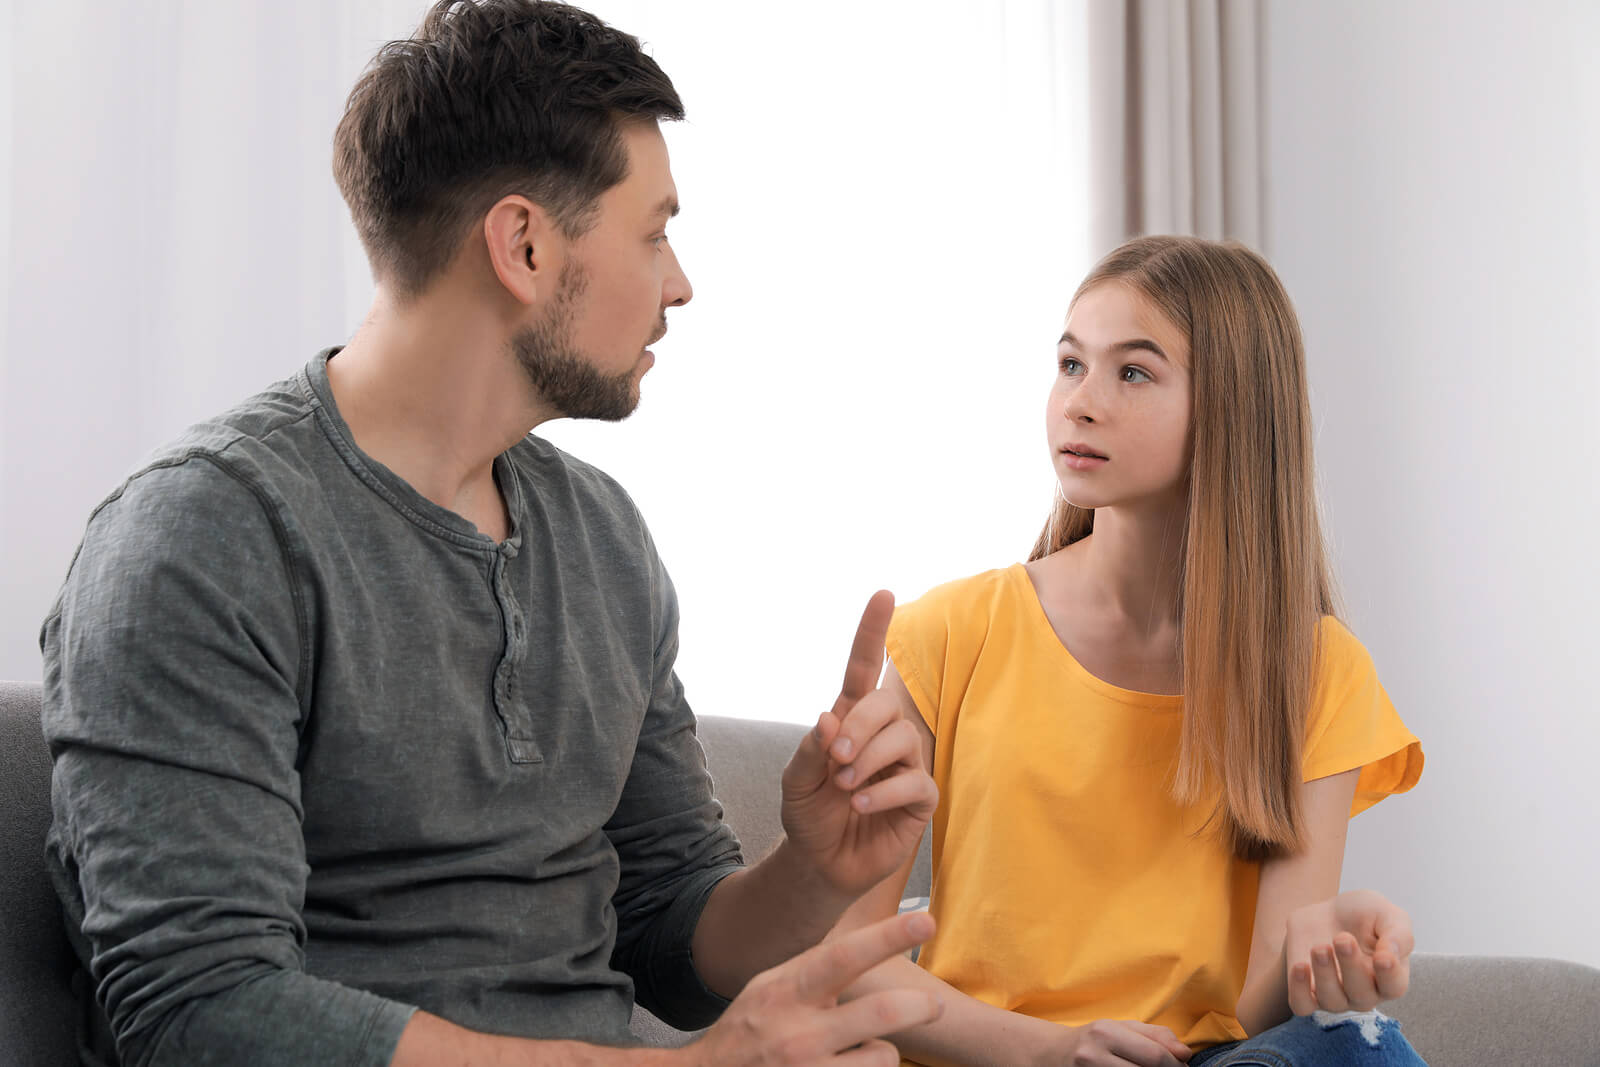 Padre hablando con su hija sobre las técnicas para afrontar las críticas en la adolescencia.